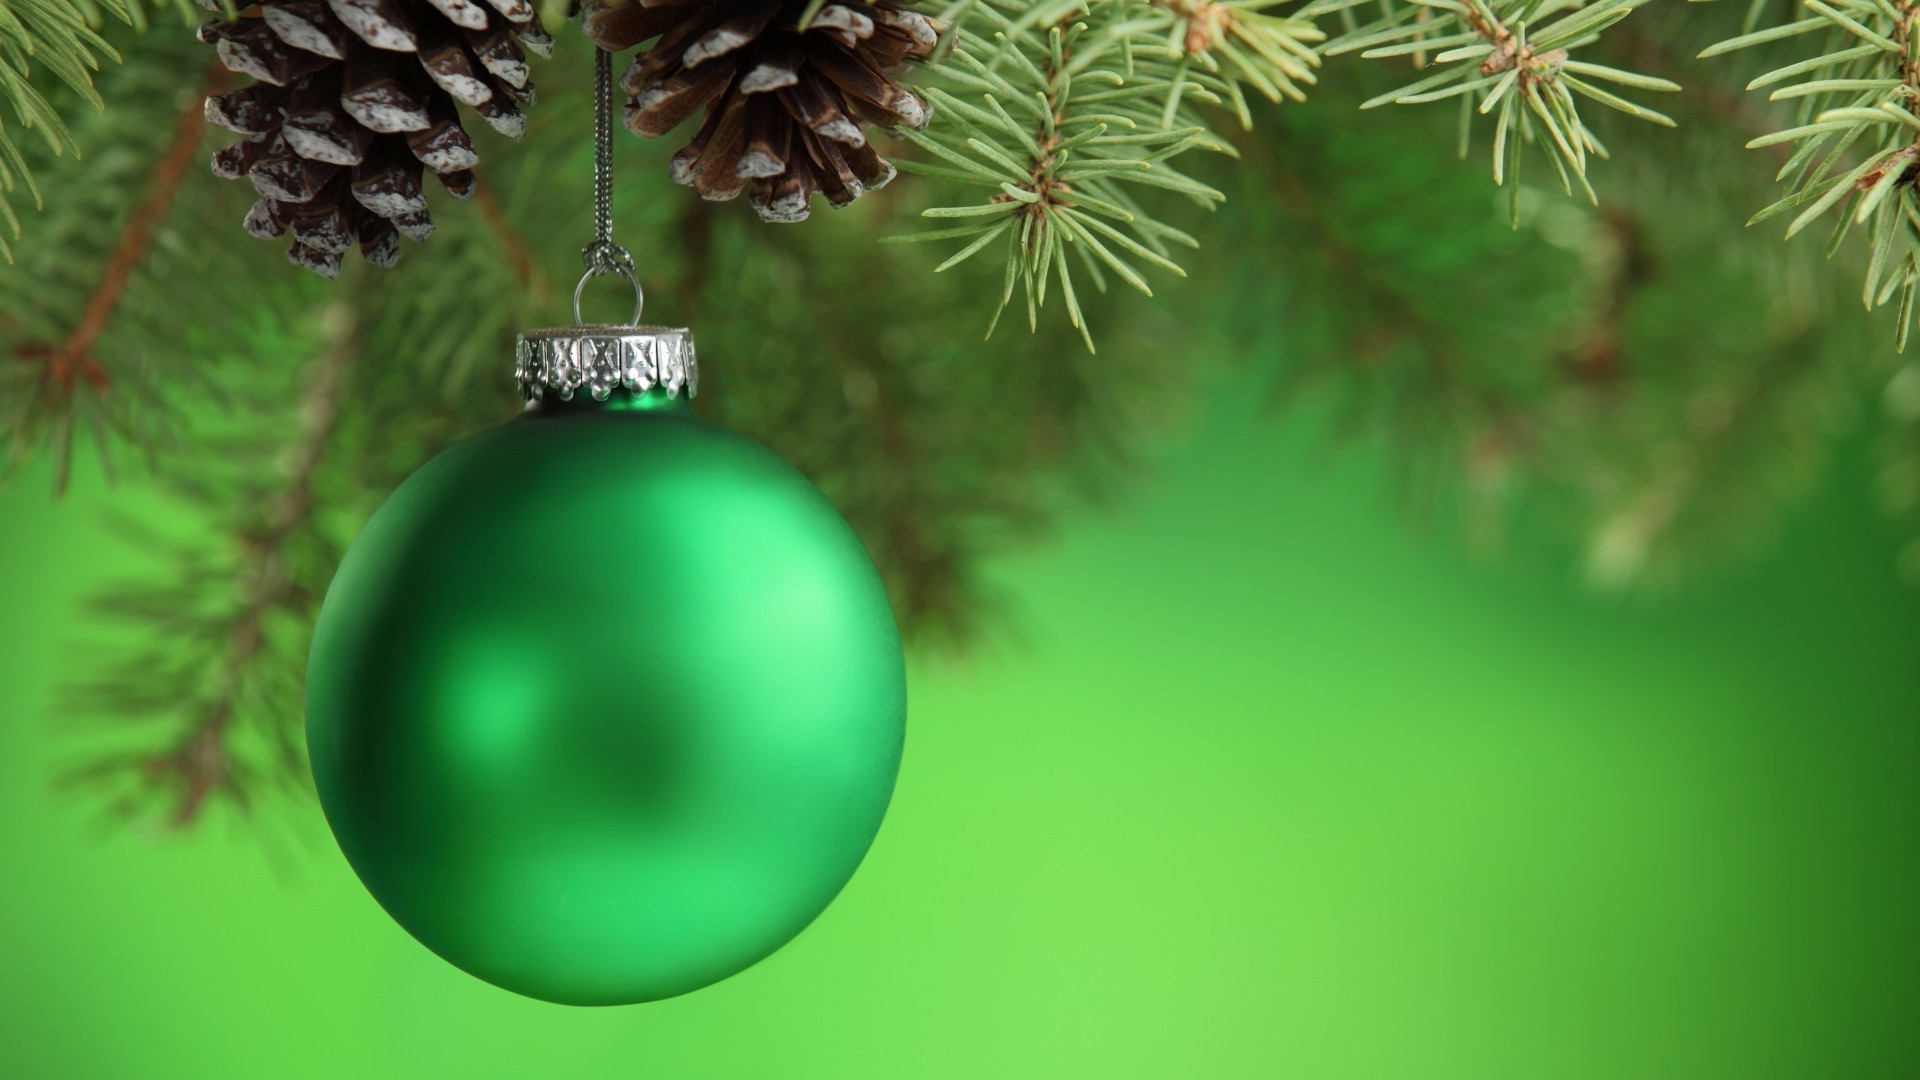 новый год рождество зима висит сосна пихта дерево светит украшения мяч иглы ели эвергрин мерри блестят хвойные филиал побрякушки витиеватый дизайн интерьера